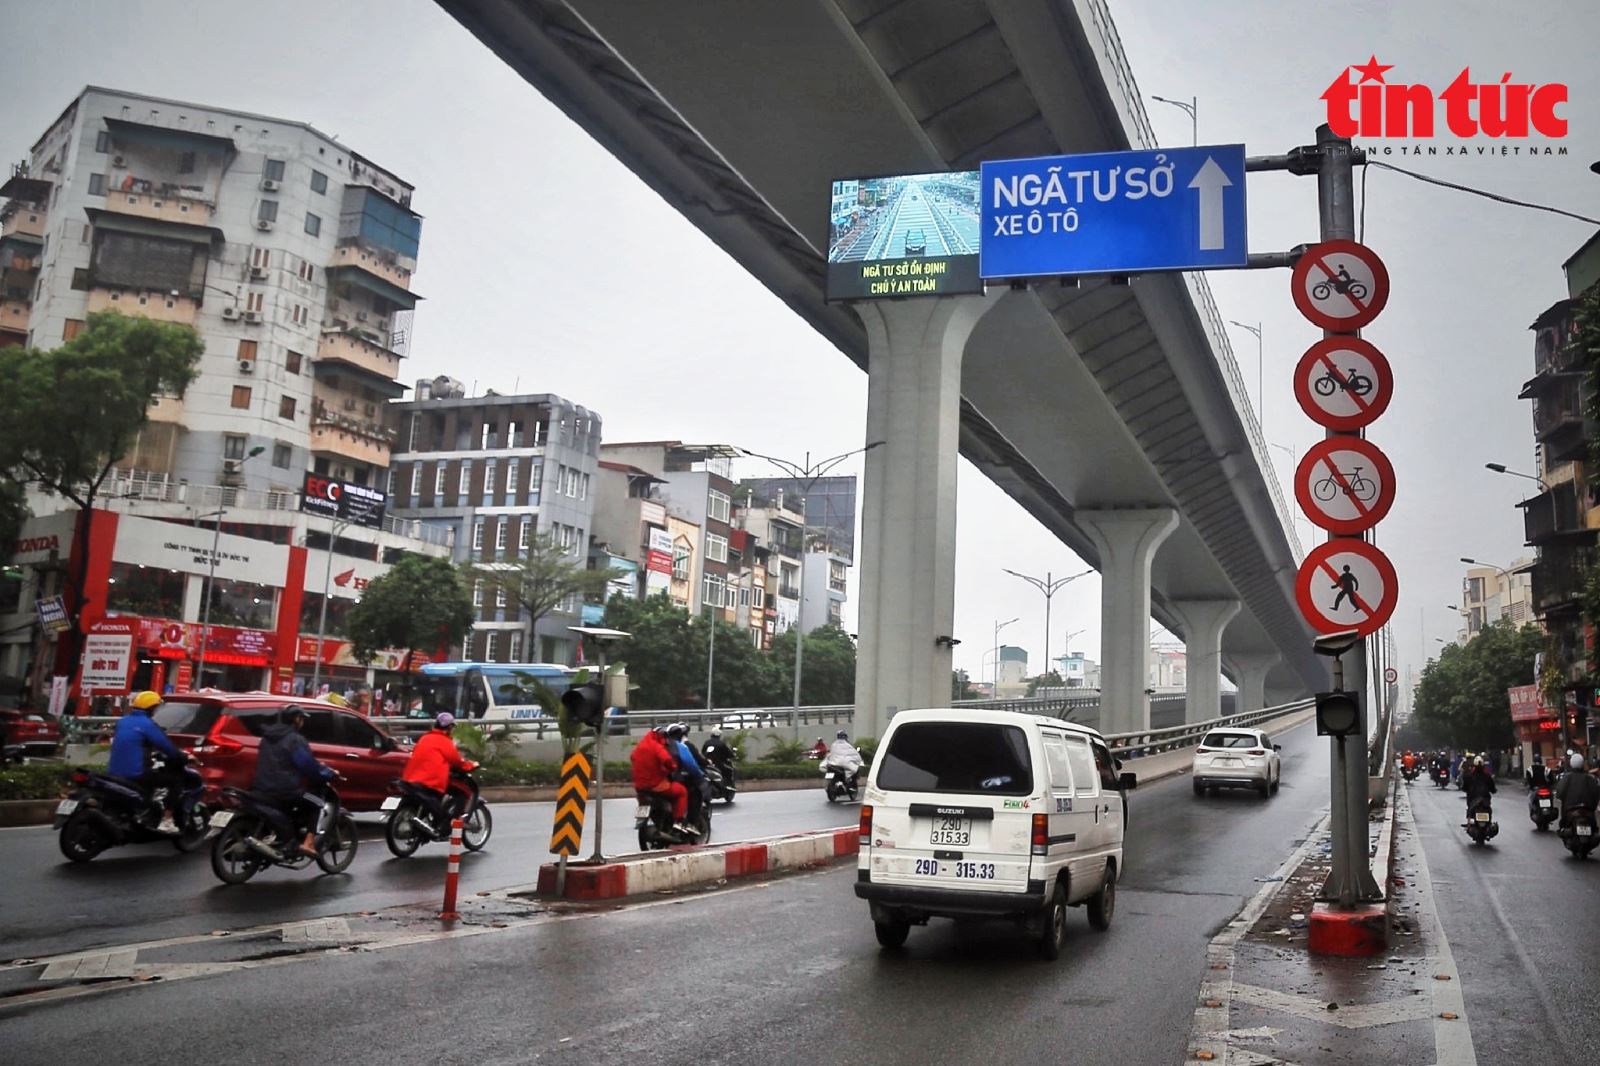 Cận cảnh biển báo thông minh tại các 'điểm đen' giao thông ở Hà Nội - Ảnh 9.